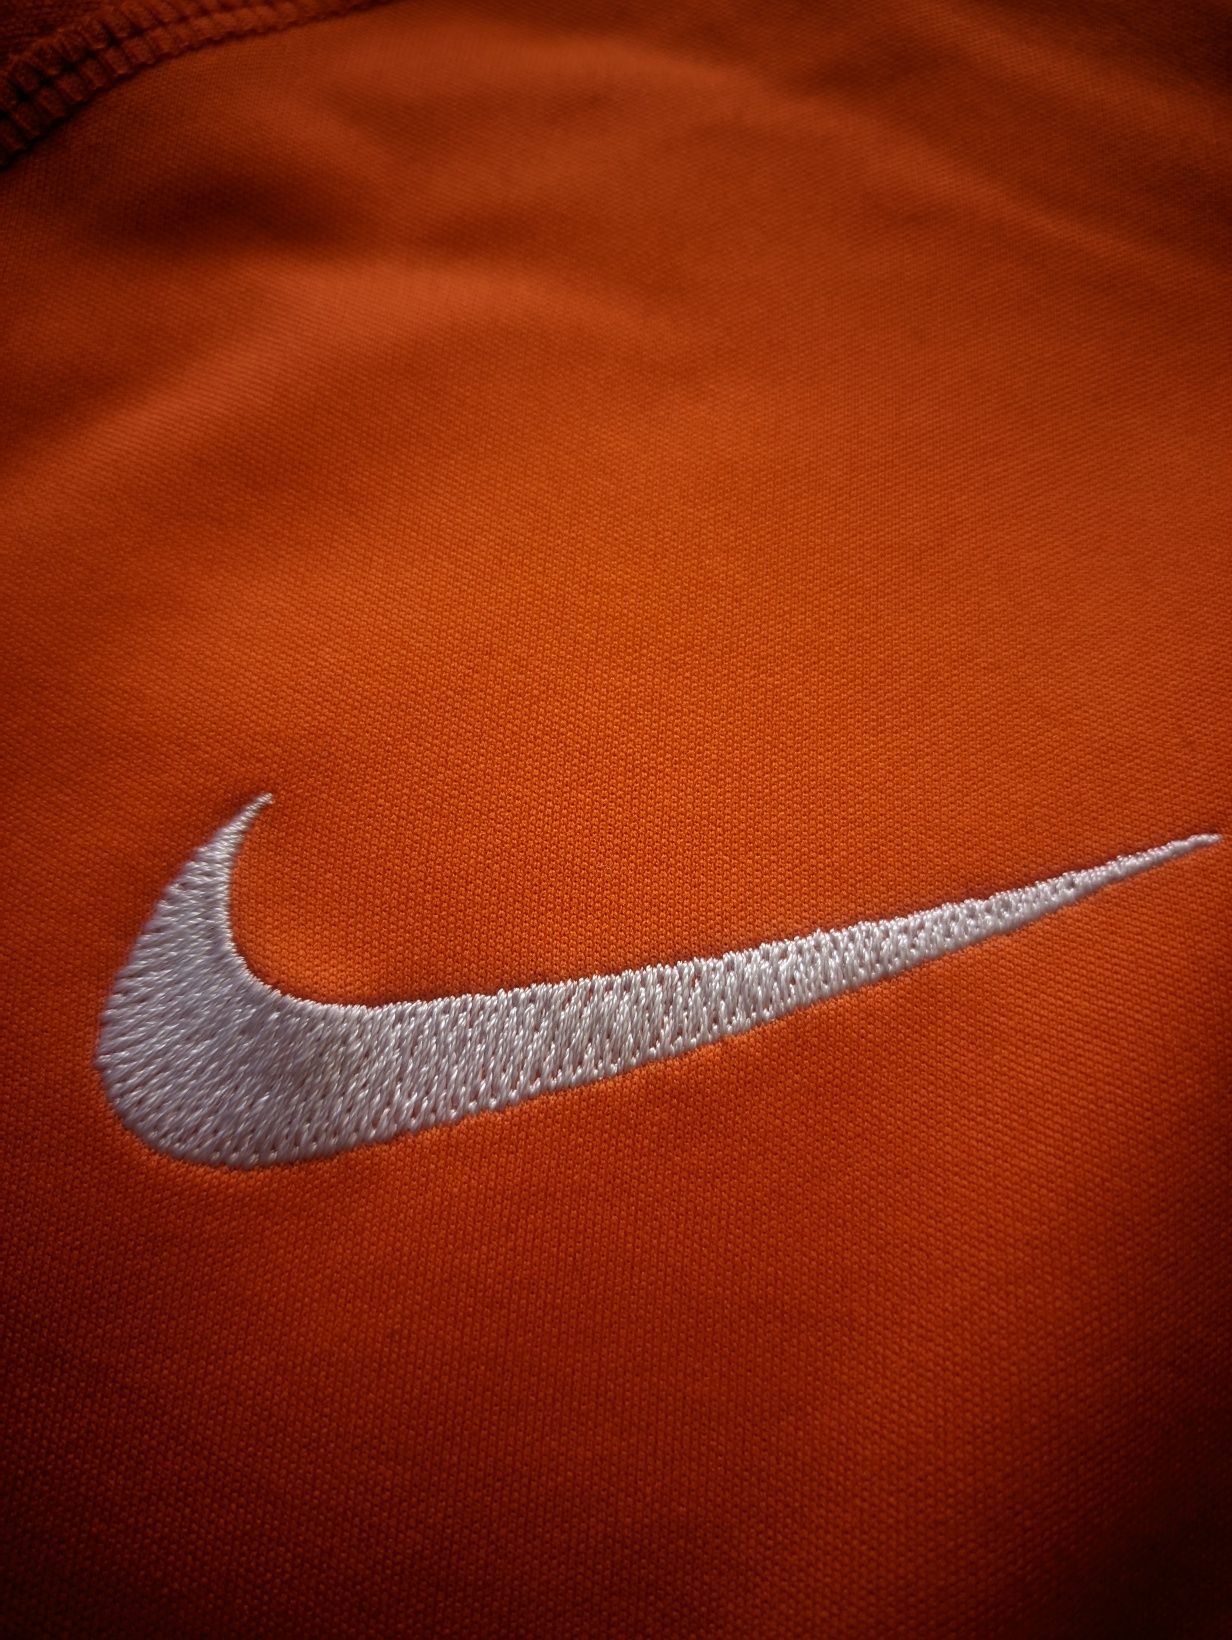 Найк лонгслив спортивная кофта Nike Dri Fit Шахтёр Shakhtar